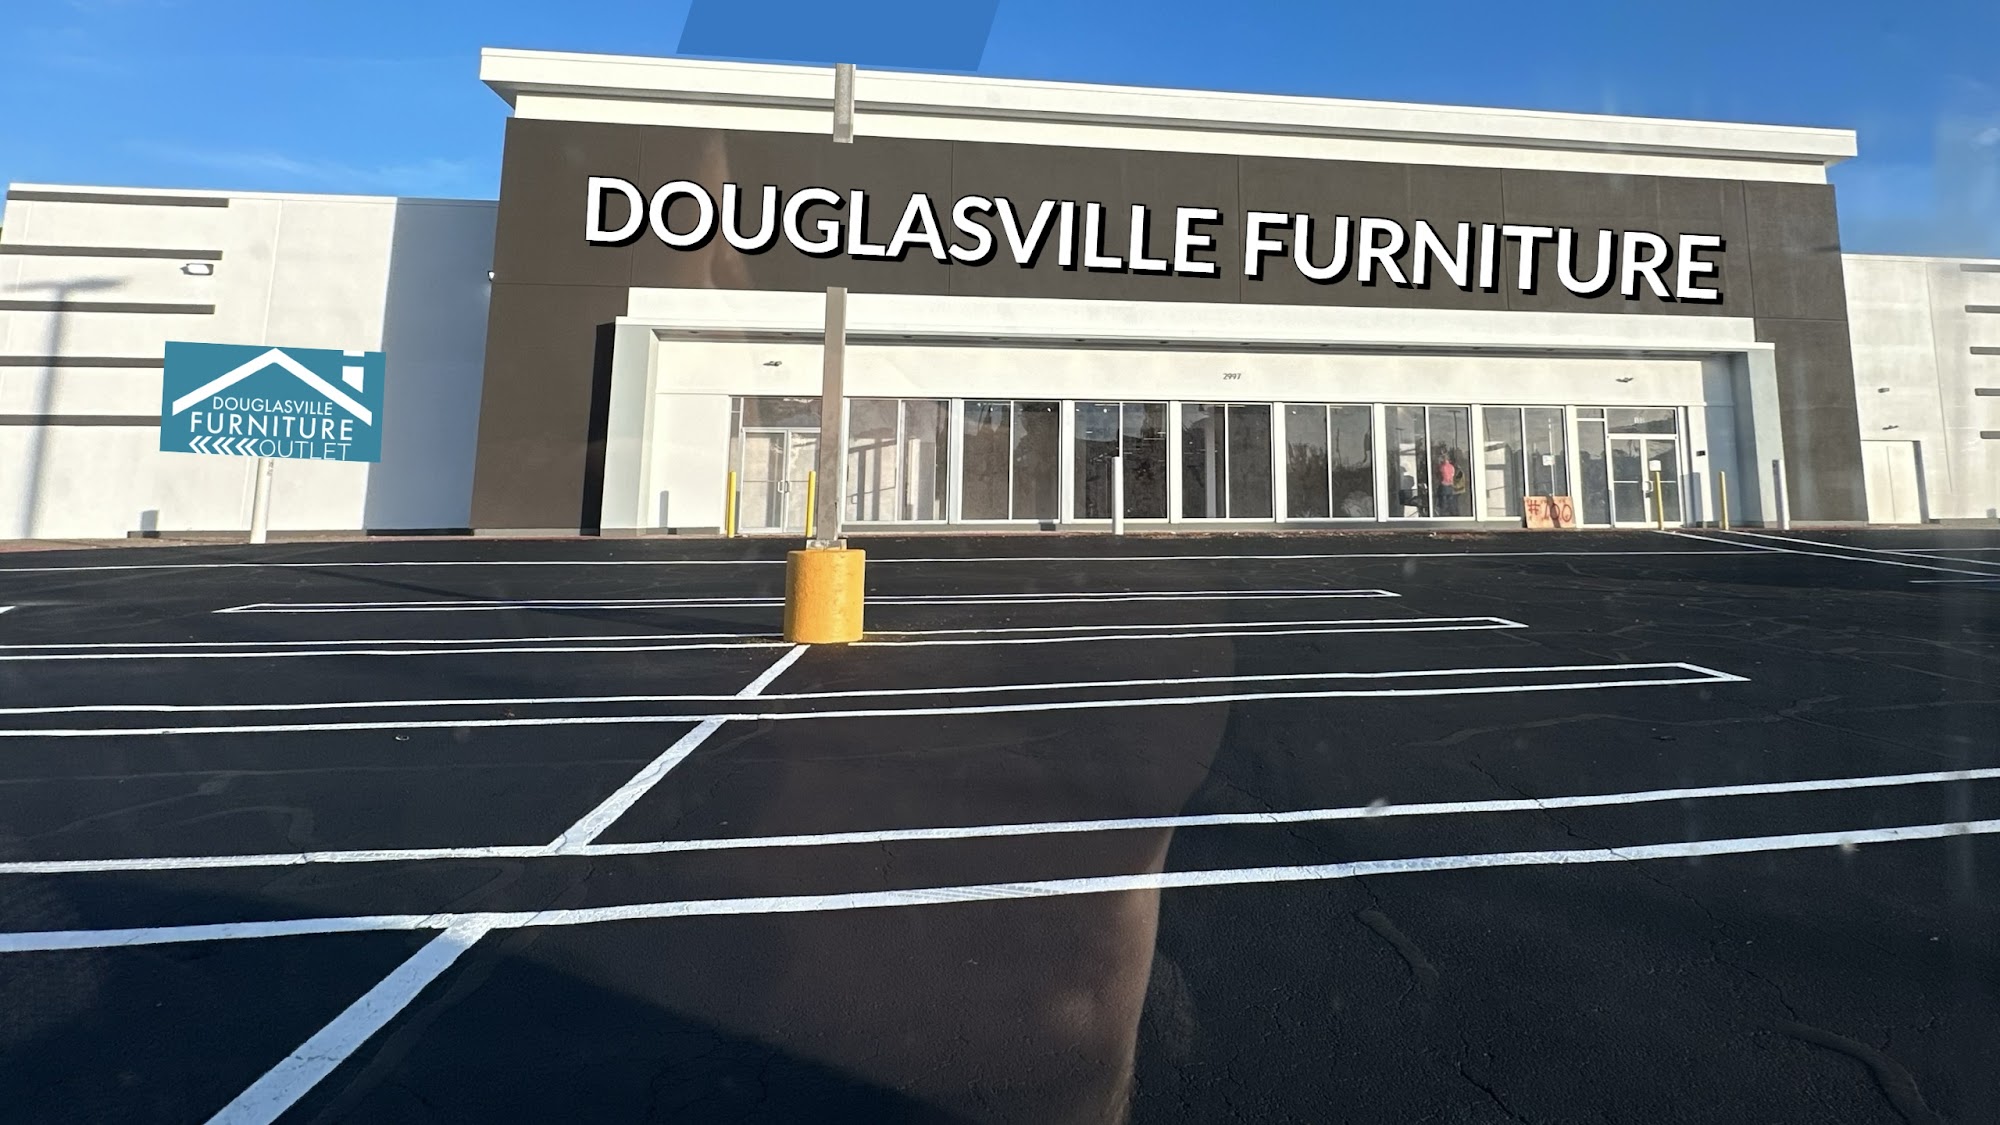 Douglasville Furniture & Mattress Outlet